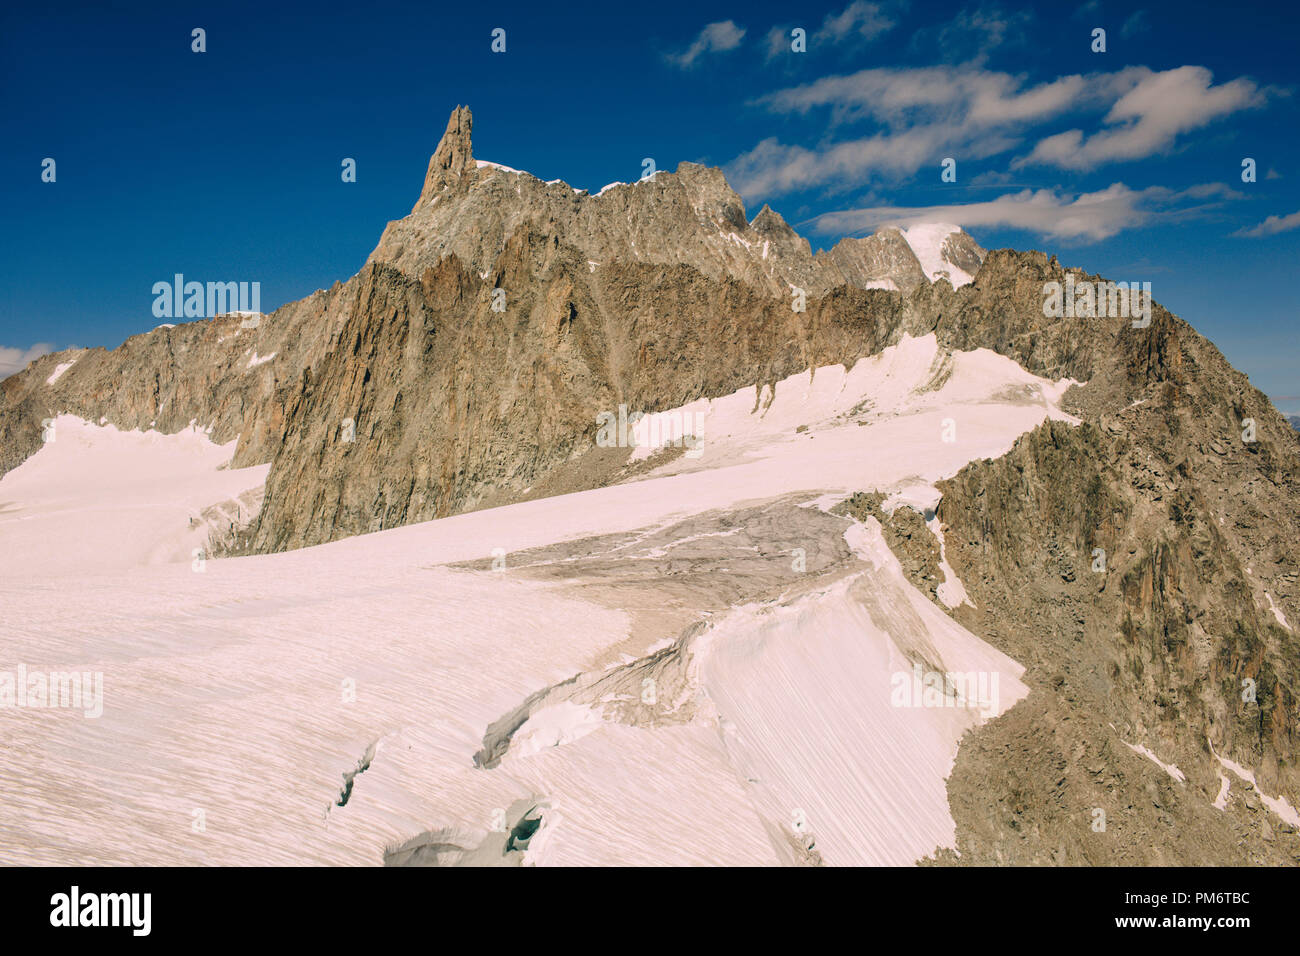 Panorama del massiccio del Monte Bianco, la più alta e la più popolare la montagna in Europa nordovest d'Italia. La vista dal terrazzo Punta Helbronner Foto Stock